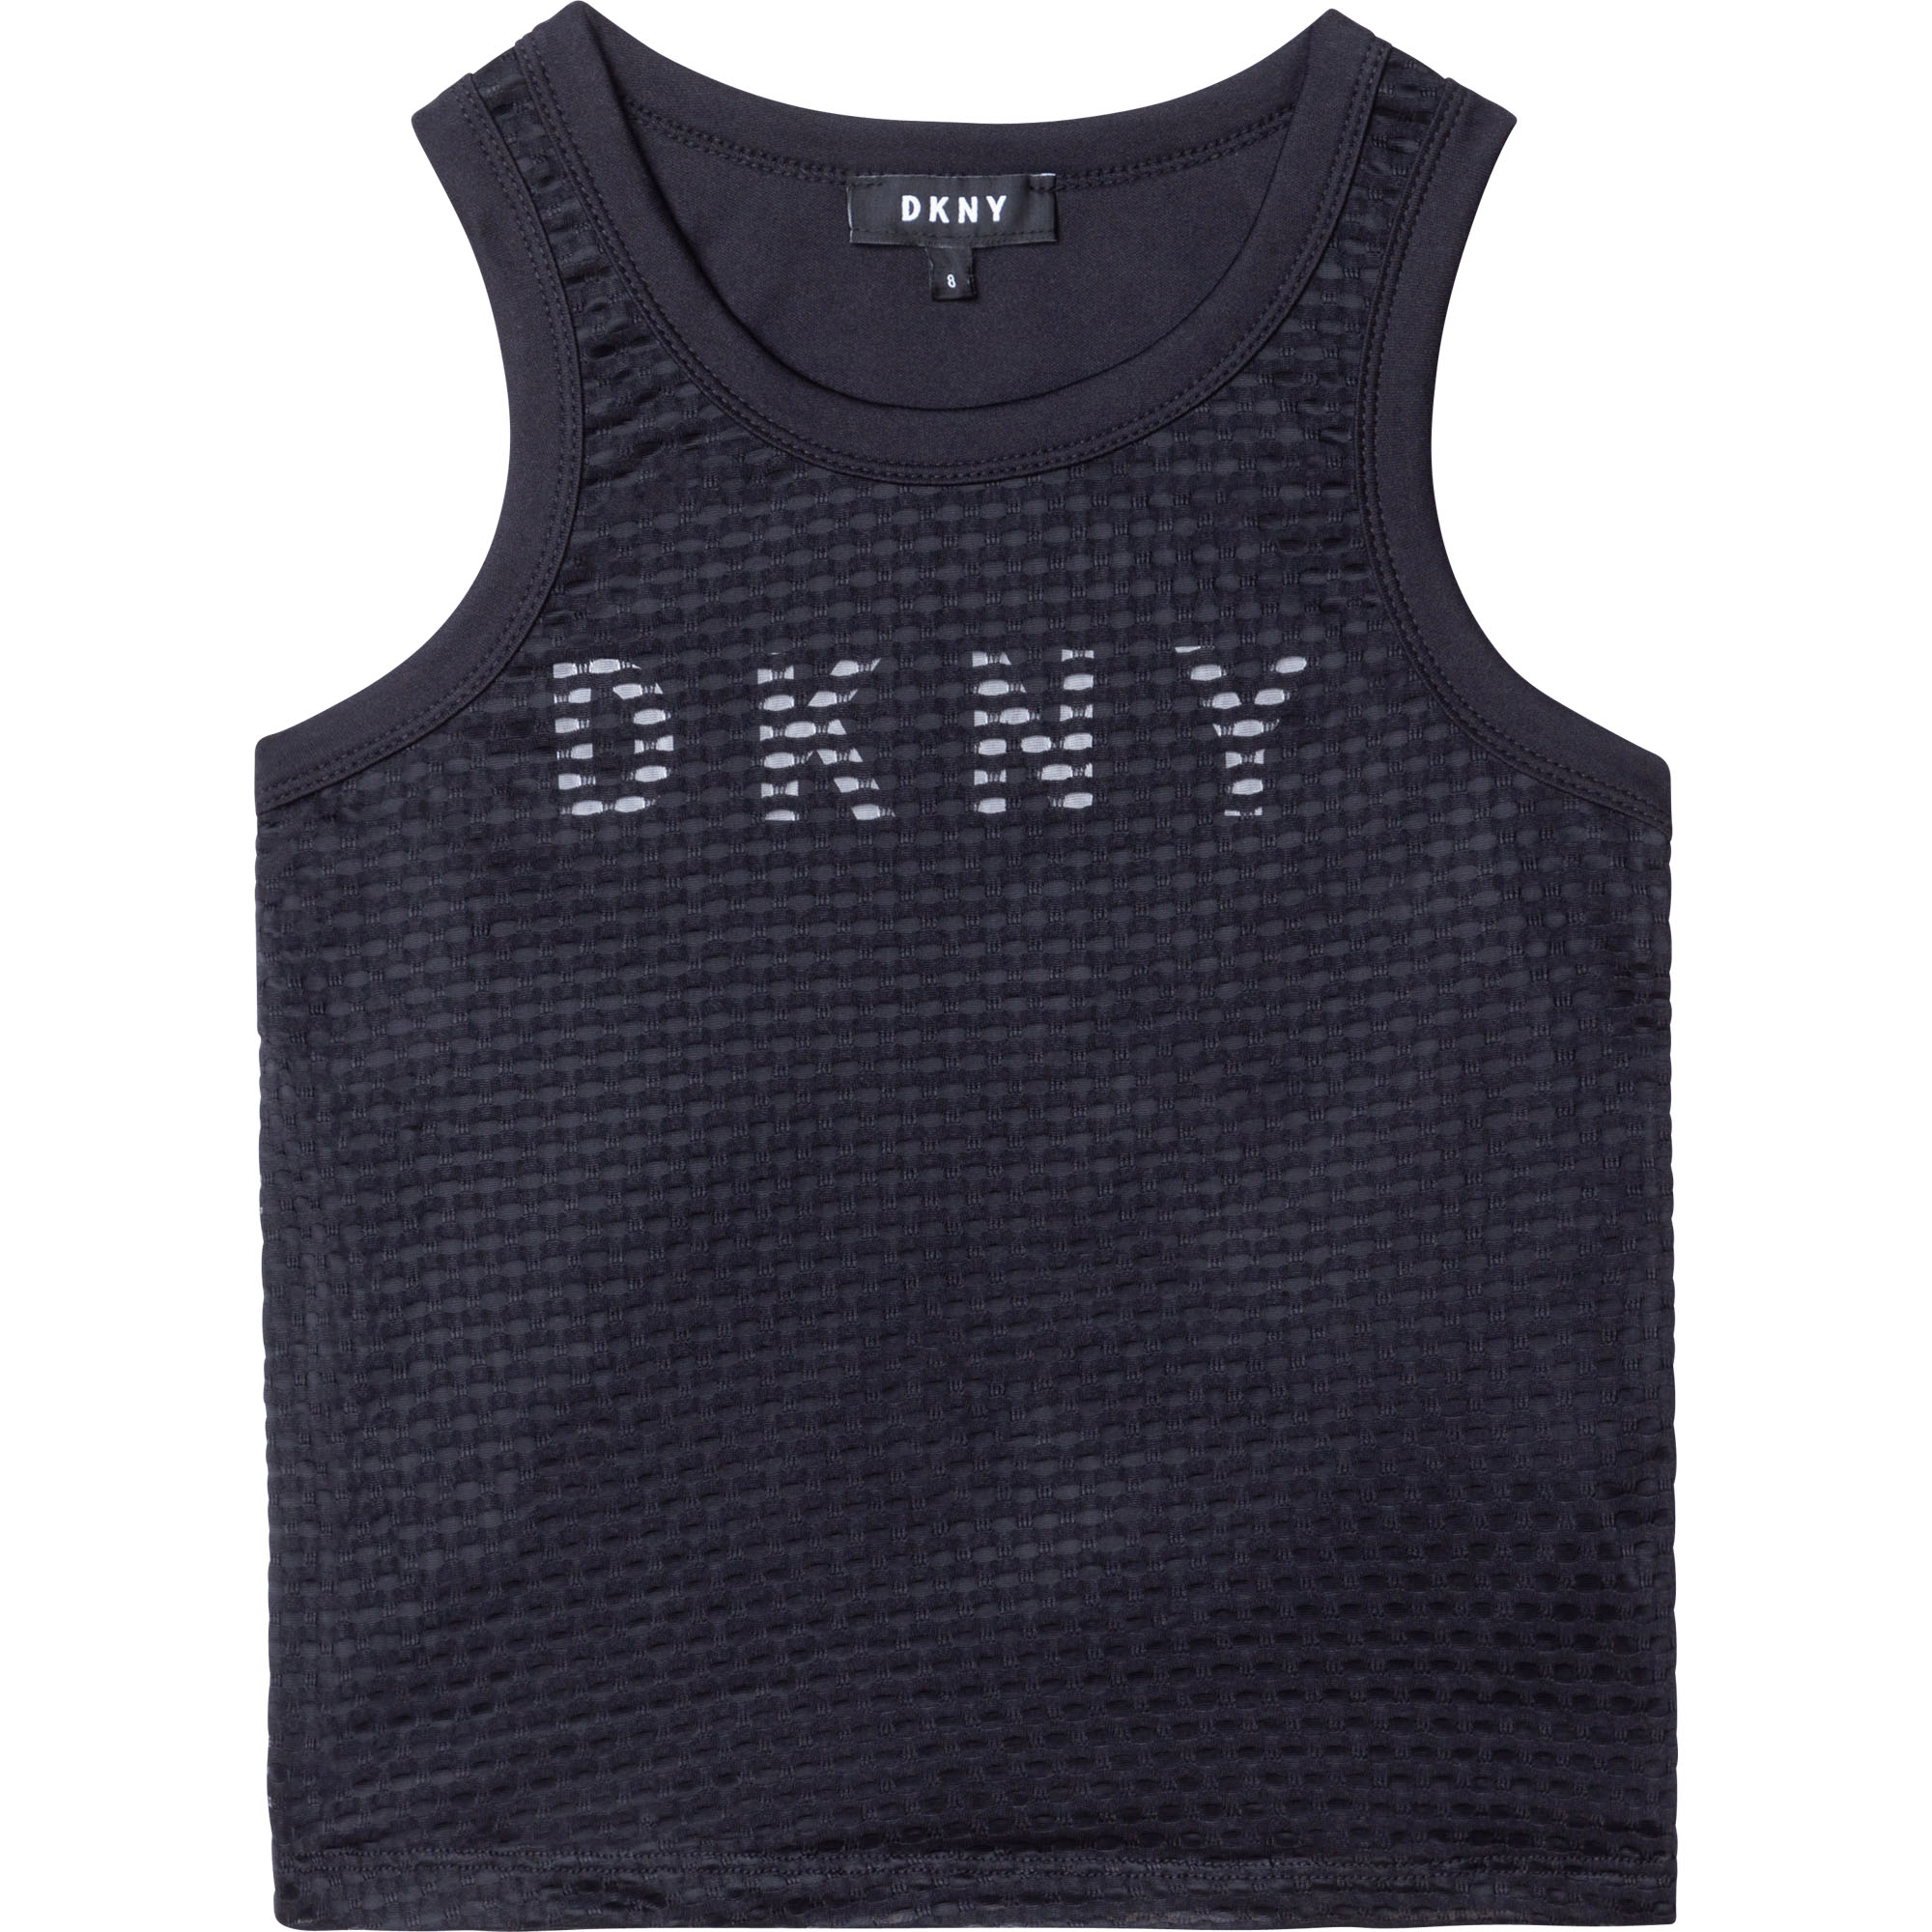 DKNY Débardeur avec logo FILLE 6A Noir